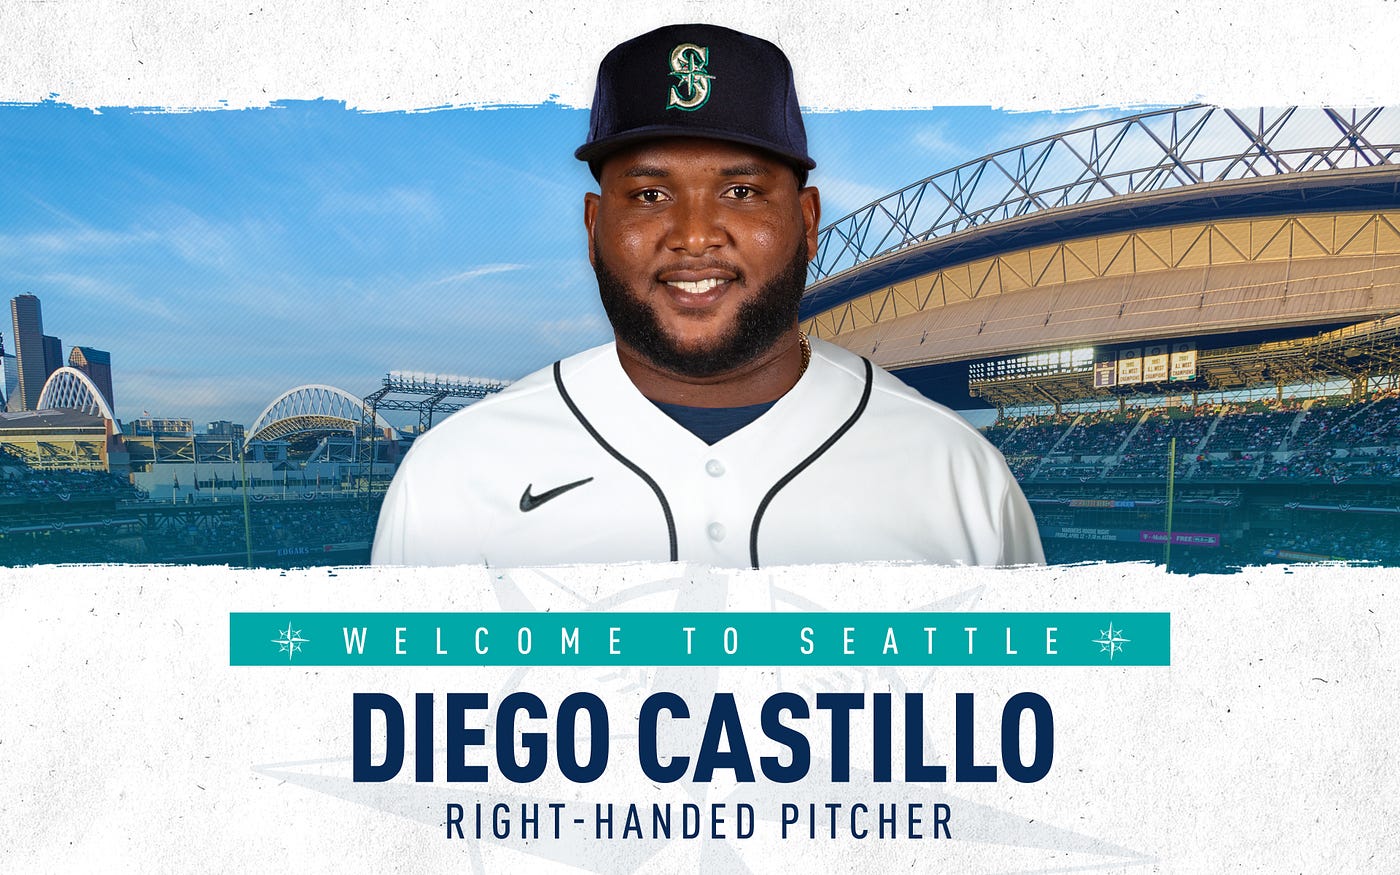 Diego Castillo - Seattle Mariners Relief Pitcher - ESPN